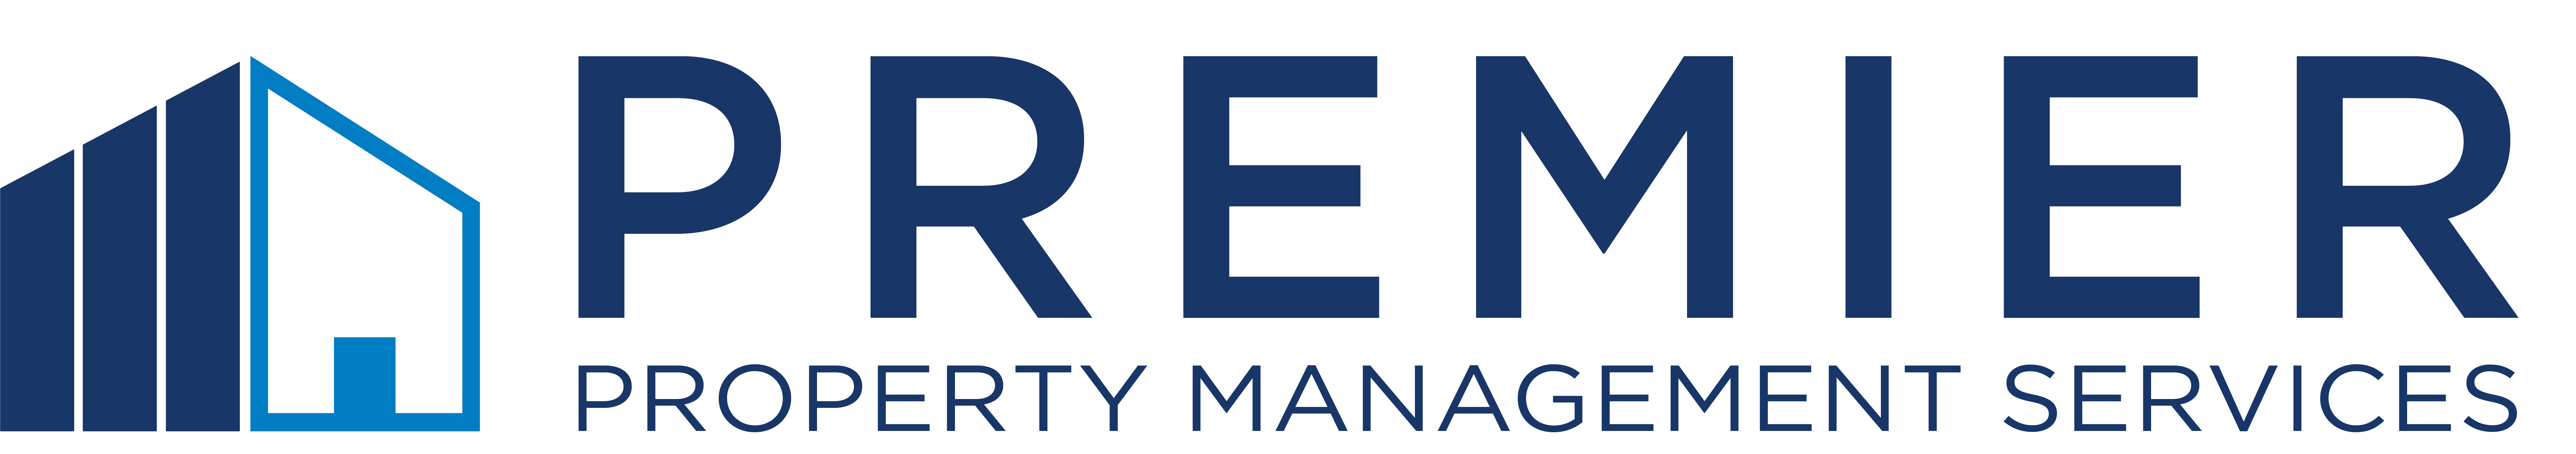 Premier Property Management Services